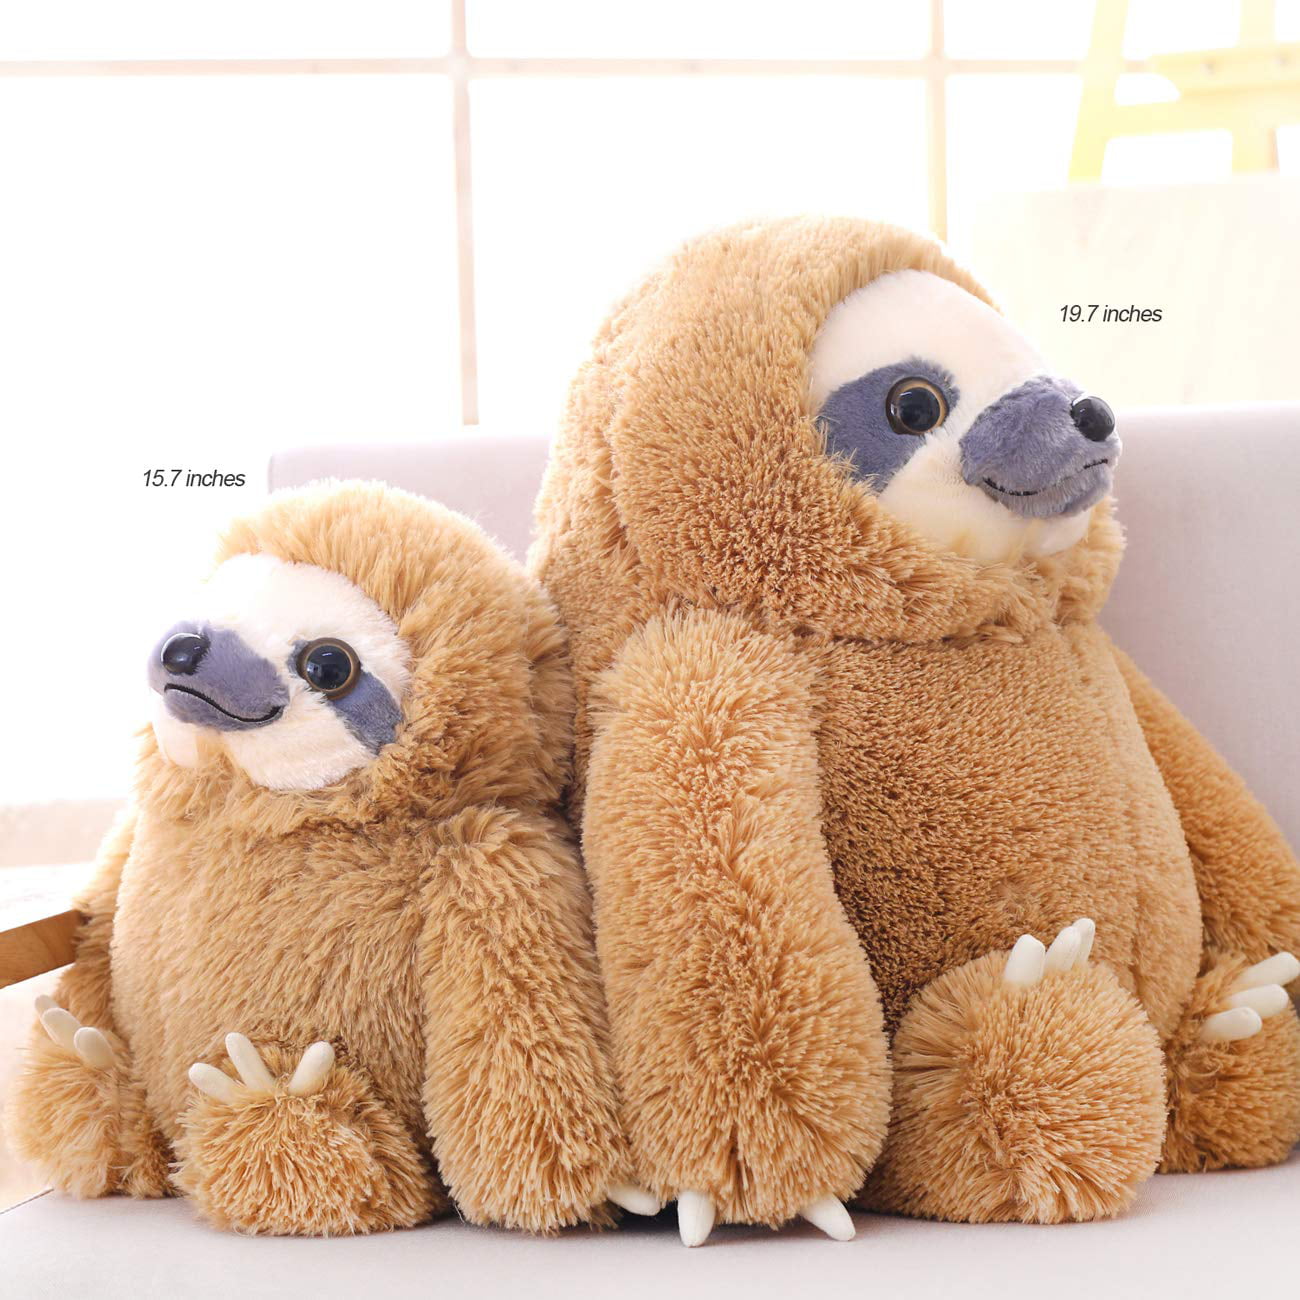 Bear Small Boyle Craftholic Rainy Sloth Stuff Toy Children Gift Plushie 